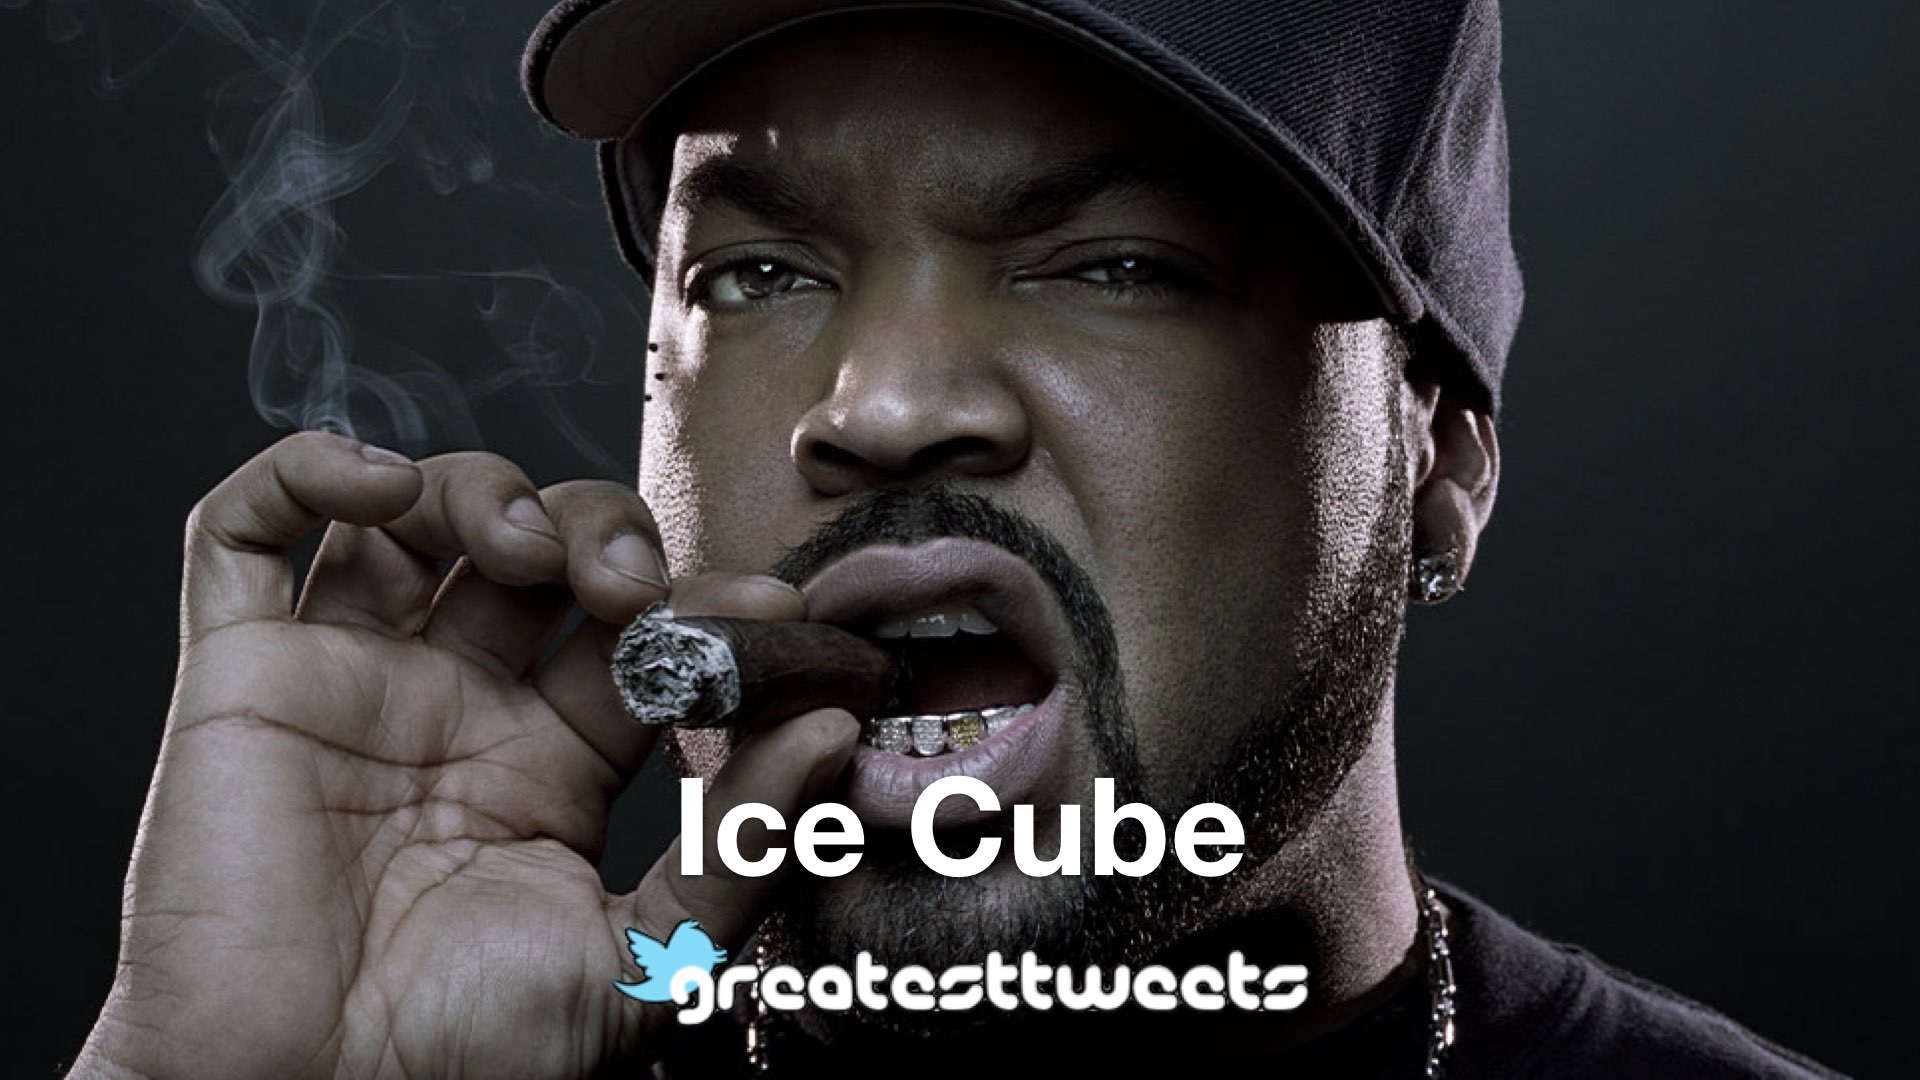 Ice cube remix